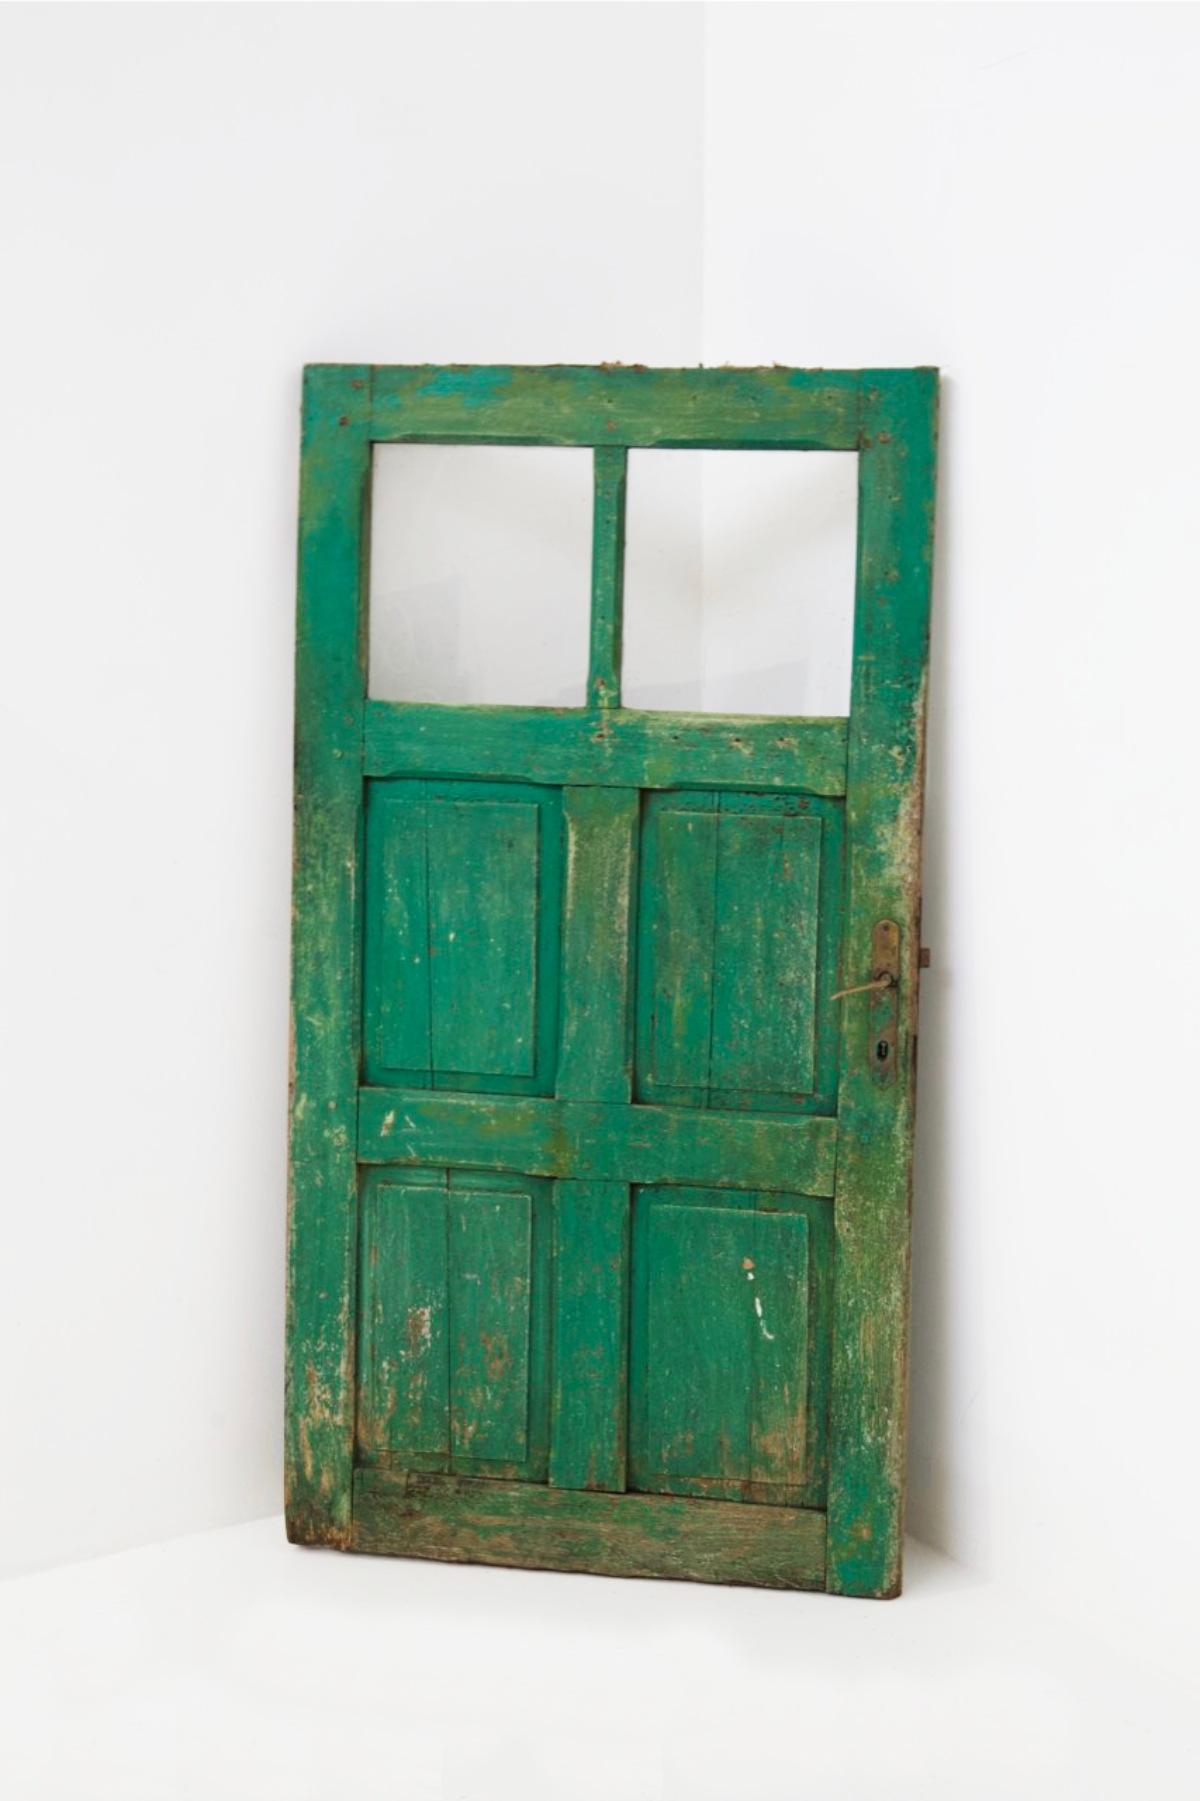 Wunderschöne italienische Holztür aus Capri aus den 1960er Jahren, in einem schönen rustikalen Stil.
Die Tür ist eine klassische rechteckige Tür, aber niedriger als die heutige Norm, weil die Häuser früher kleiner waren.
Die Tür ist aus feinem